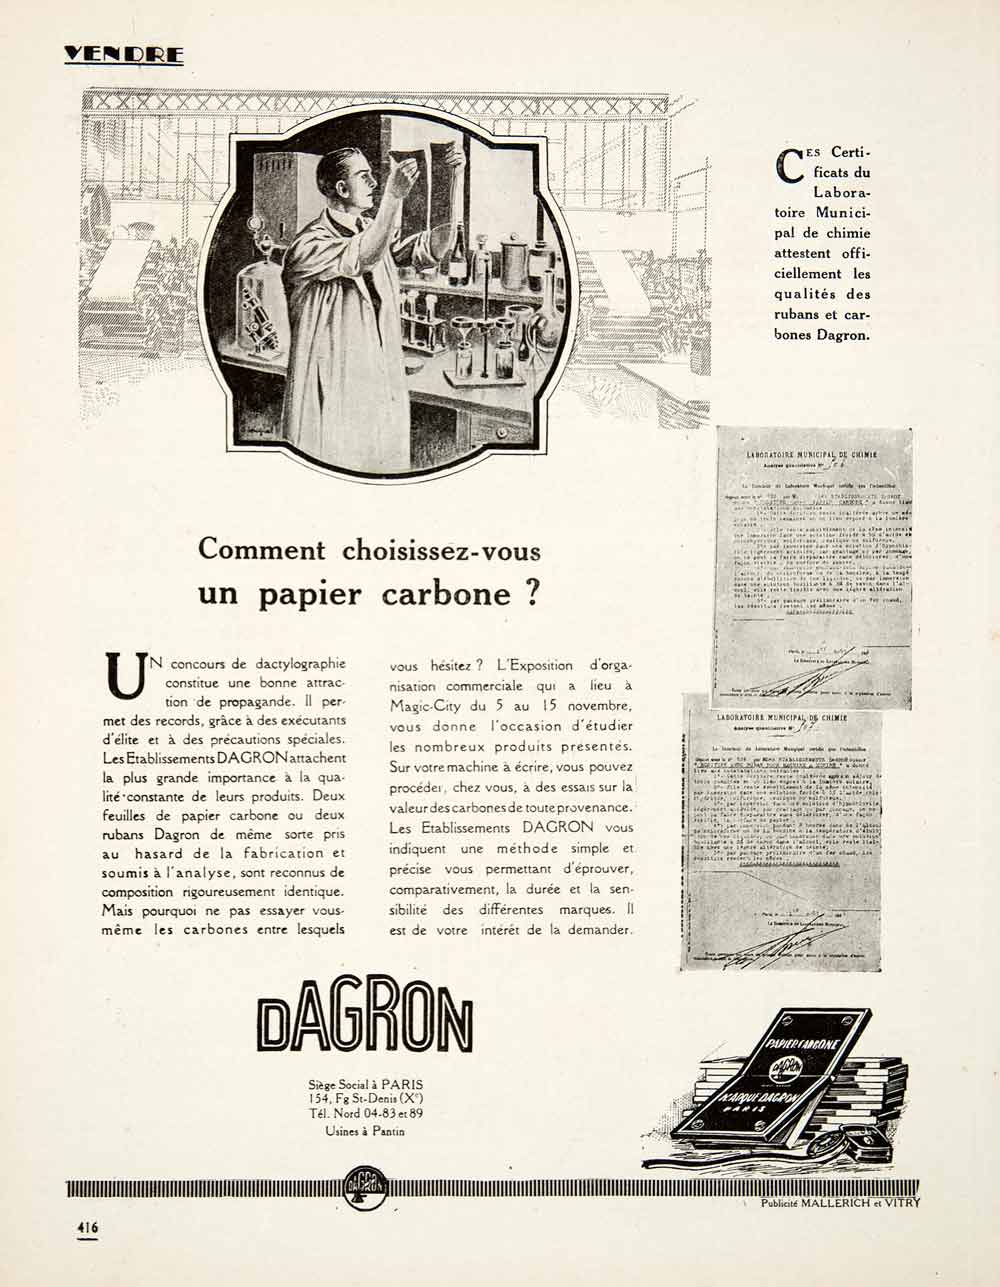 1925 Ad Dagron 154 Faubourg Saint-Denis Paris Carbon Paper Exposition Magic VEN4